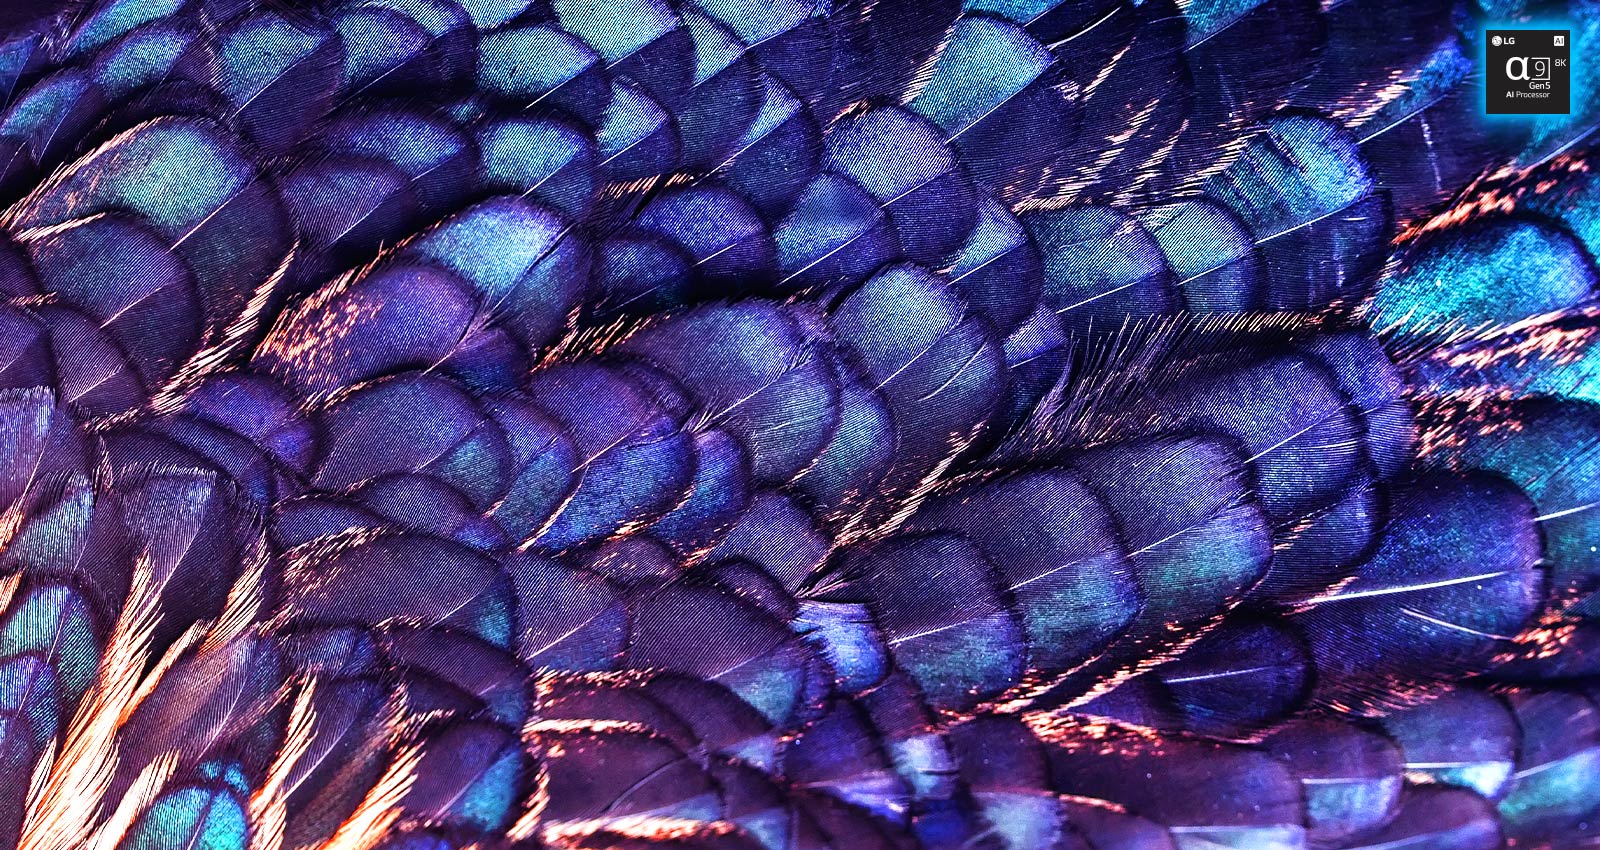 Zu sehen ist ein Bild mit den Texturen von leuchtend schillernden Federn eines lilafarbenen Vogels. Das Bild ist in zwei Bereiche aufgeteilt – der obere Bereich ist in lebhaften Farben gehalten und mit dem Schriftzug „AI 8K Upscaling“ und einer Abbildung des Prozessorchips versehen. Die Farben des unteren Bereichs sind deutlich blasser.